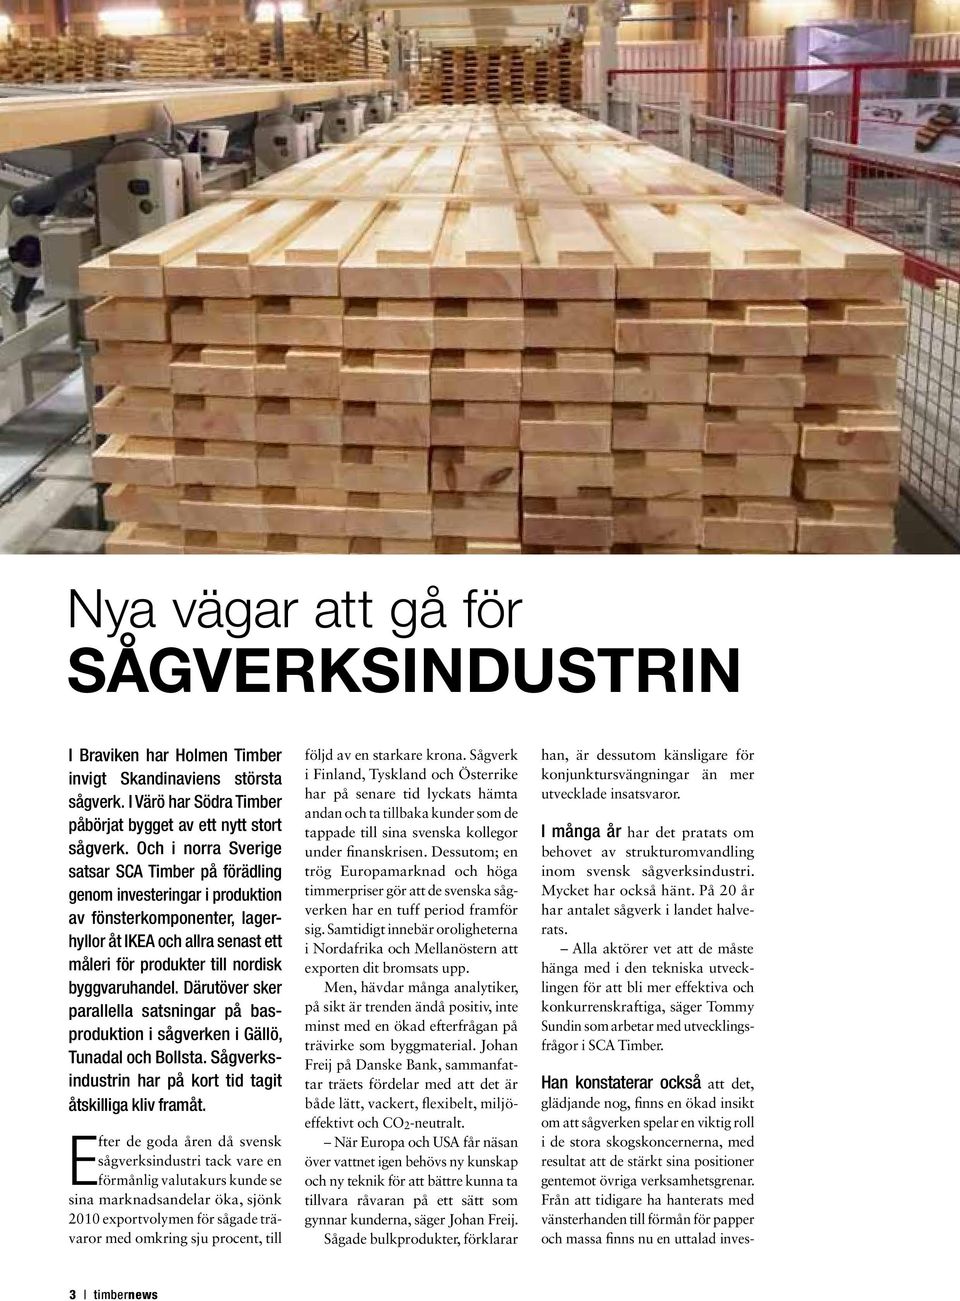 Därutöver sker parallella satsningar på basproduktion i sågverken i Gällö, Tunadal och Bollsta. Sågverksindustrin har på kort tid tagit åtskilliga kliv framåt.